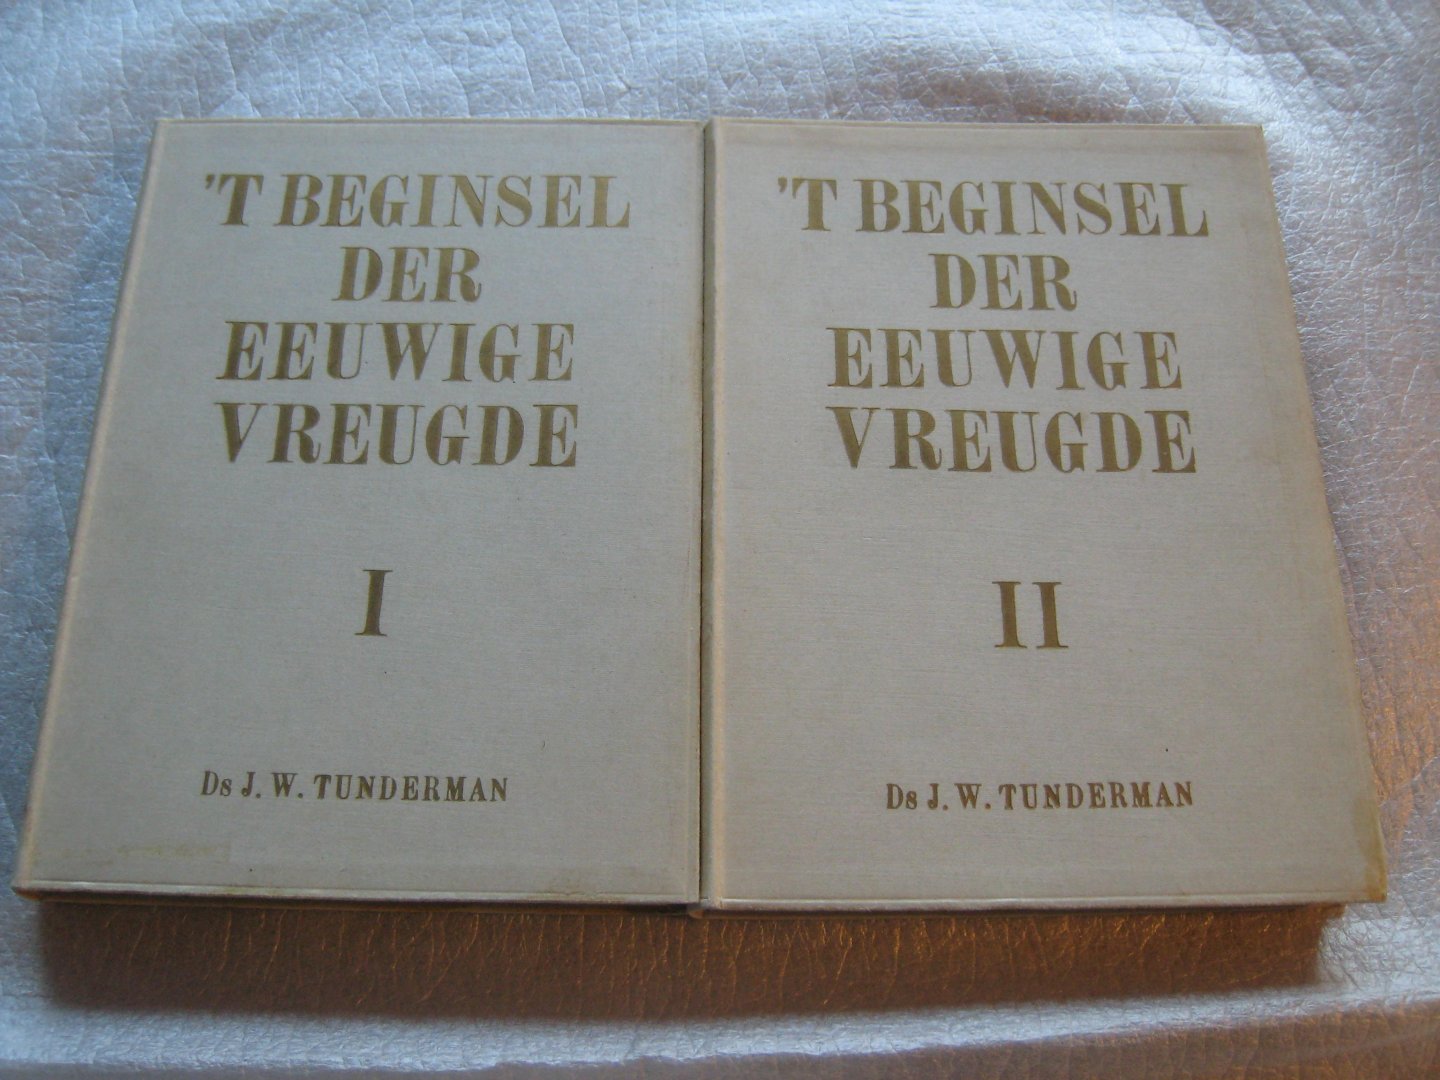 Tunderman, Ds. J.W. - 't Beginsel der eeuwige vreugde I en II